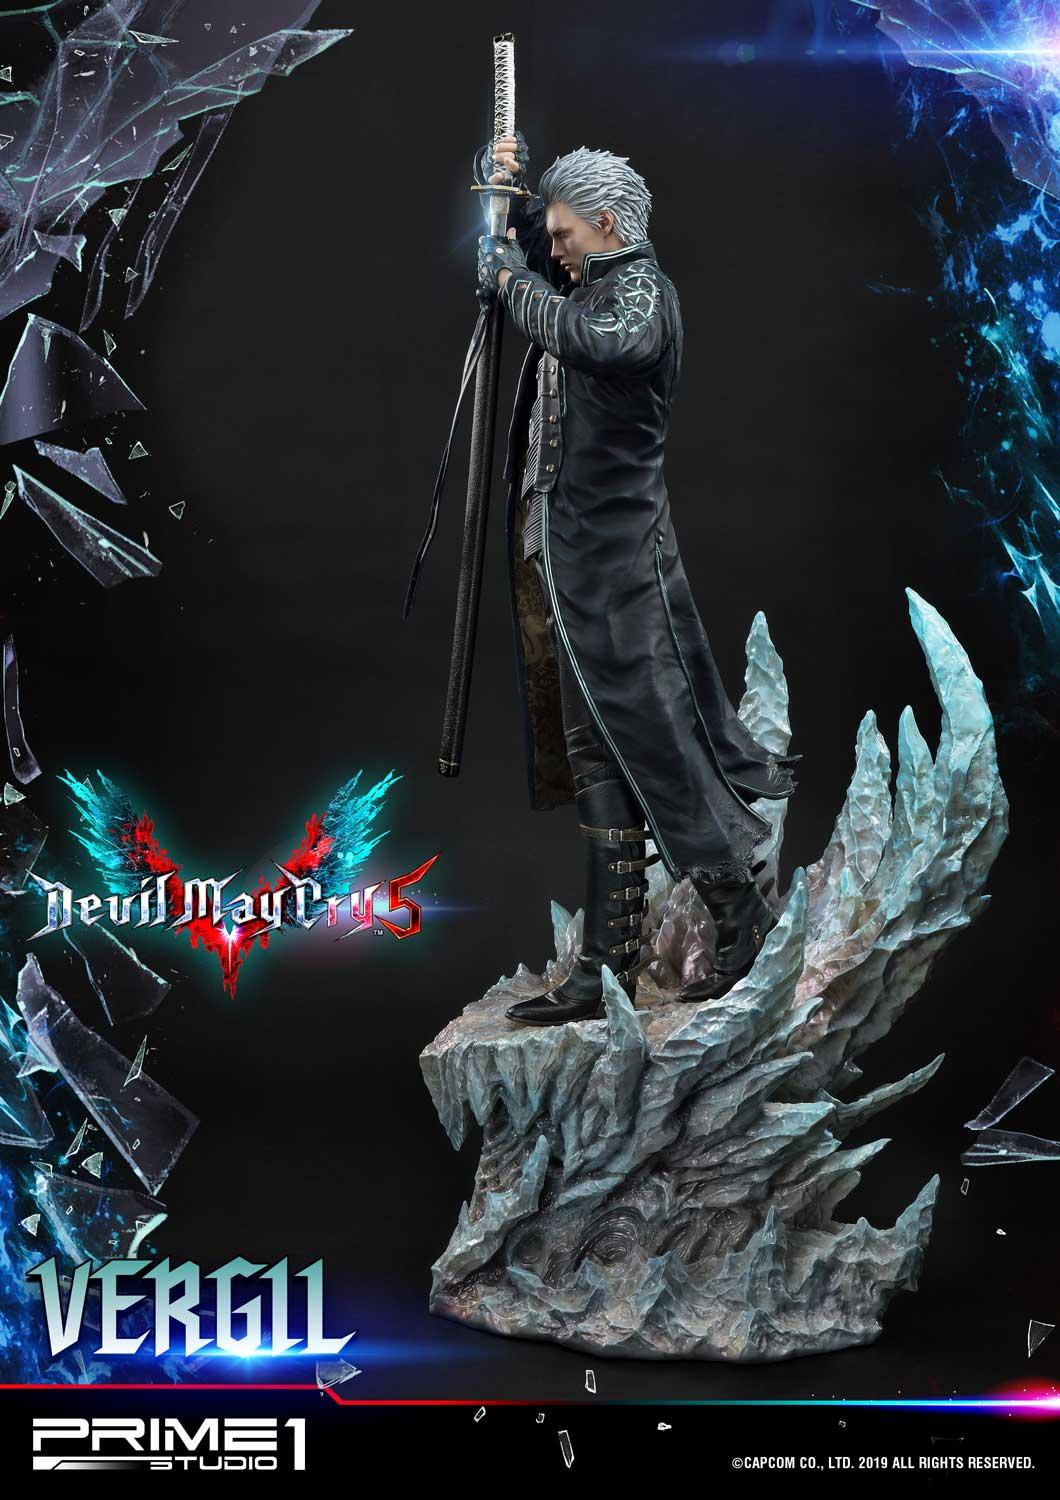 Devil May Cry 3 'Code:1 Dante & Code:2 Vergil' manga LOT - JAPAN